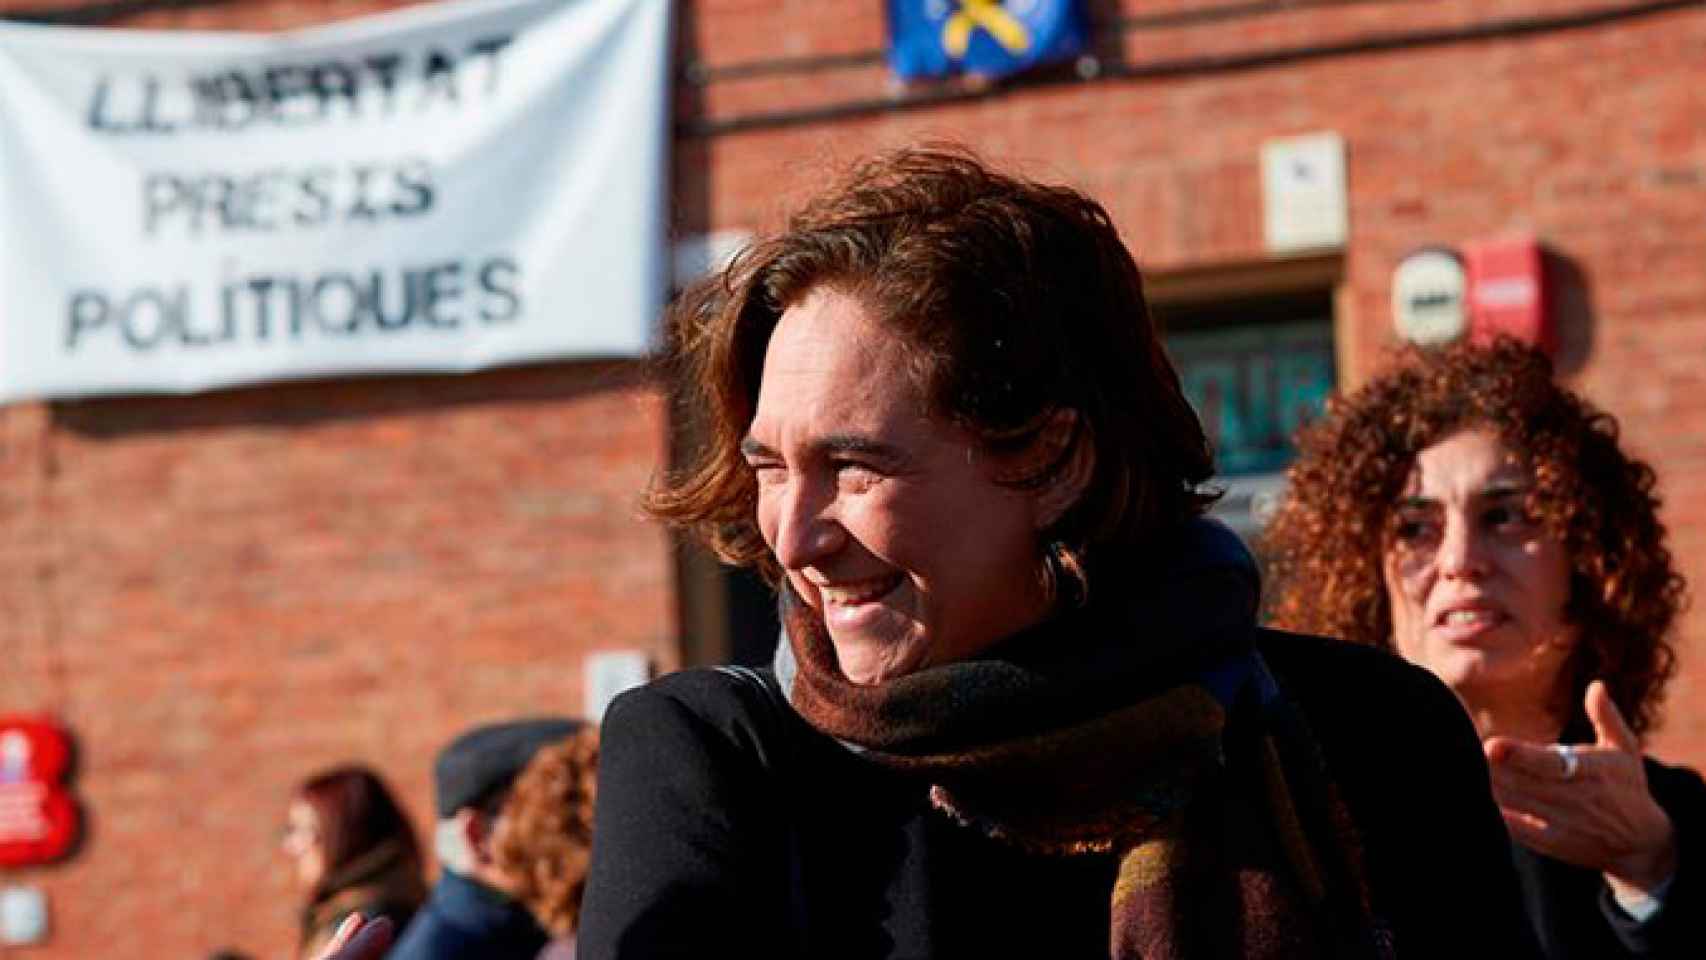 La alcaldesa de Barcelona, Ada Colau, en la fiesta y desfile de los Tres Tombs del barrio de Sant Andreu, con una pancarta de Libertar presas políticas al fondo / EFE